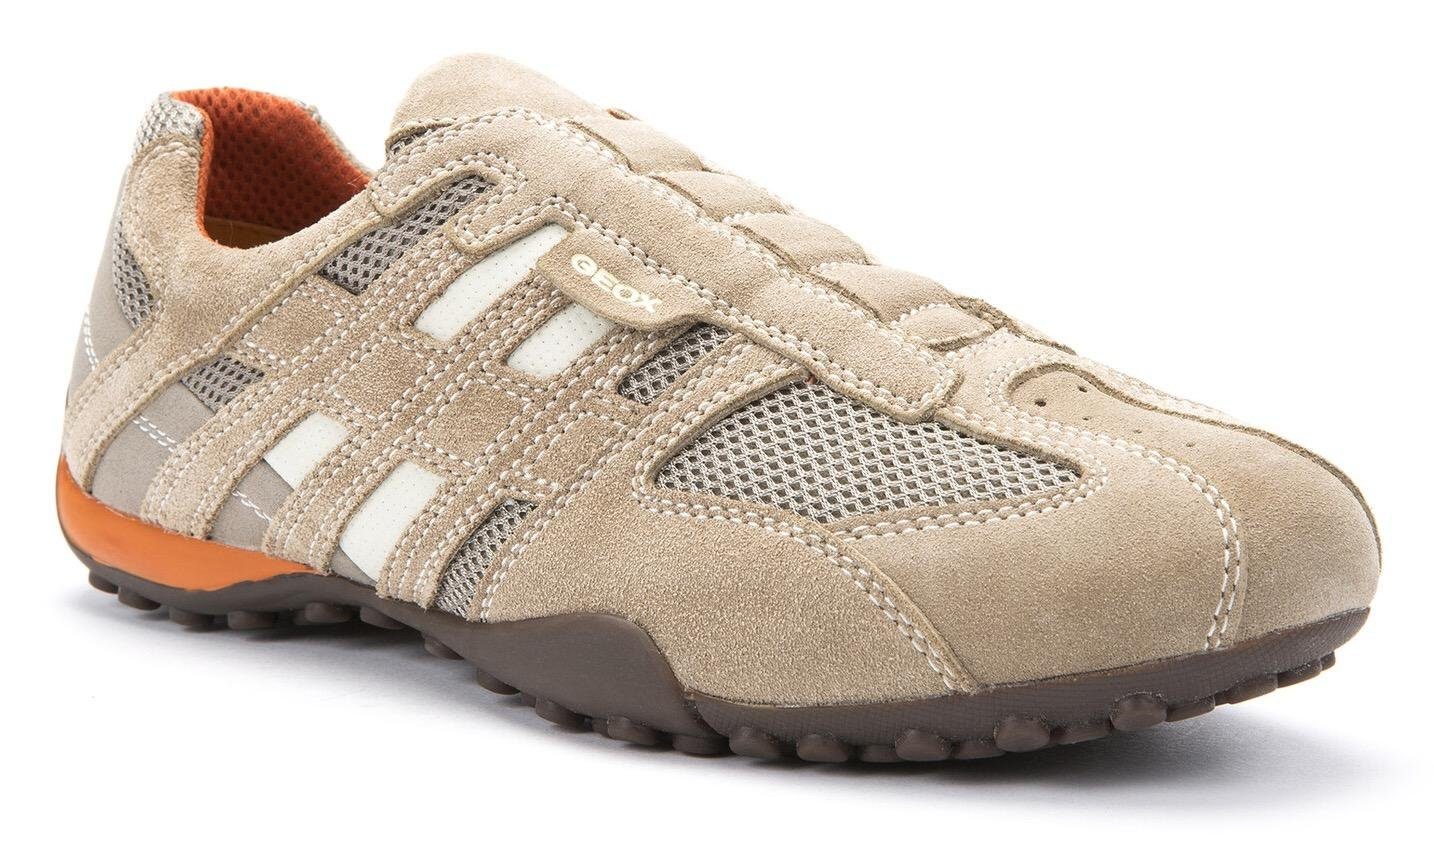 Geox UOMO SNAKE Slip-On Sneaker Slipper, Freizeitschuh mit Ziernähten und mit Geox Spezial Membrane